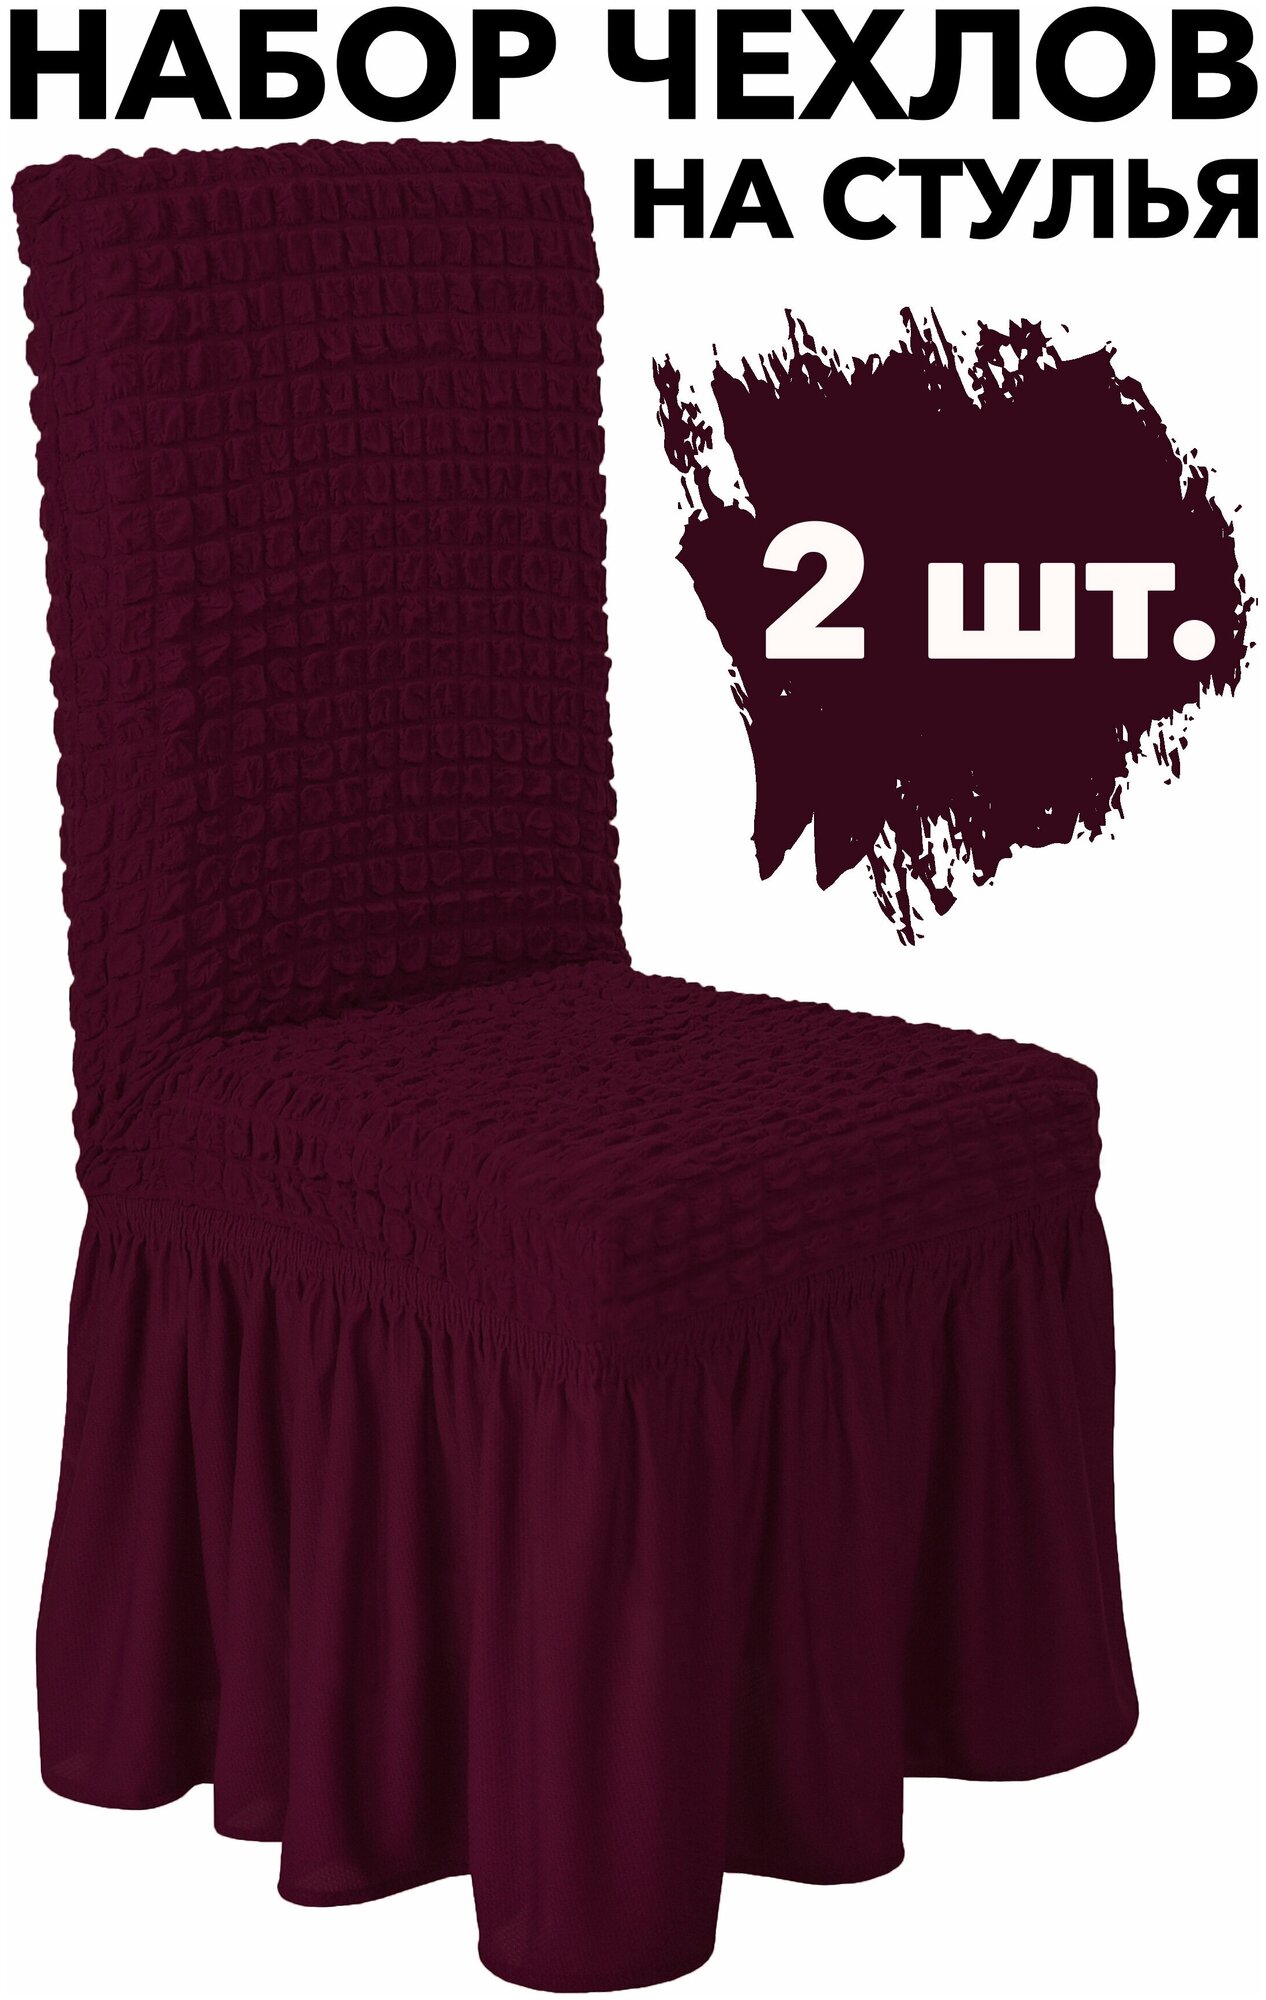 Чехлы на стулья со спинкой 2 шт набор на кухню универсальные с юбкой, цвет Бордовый